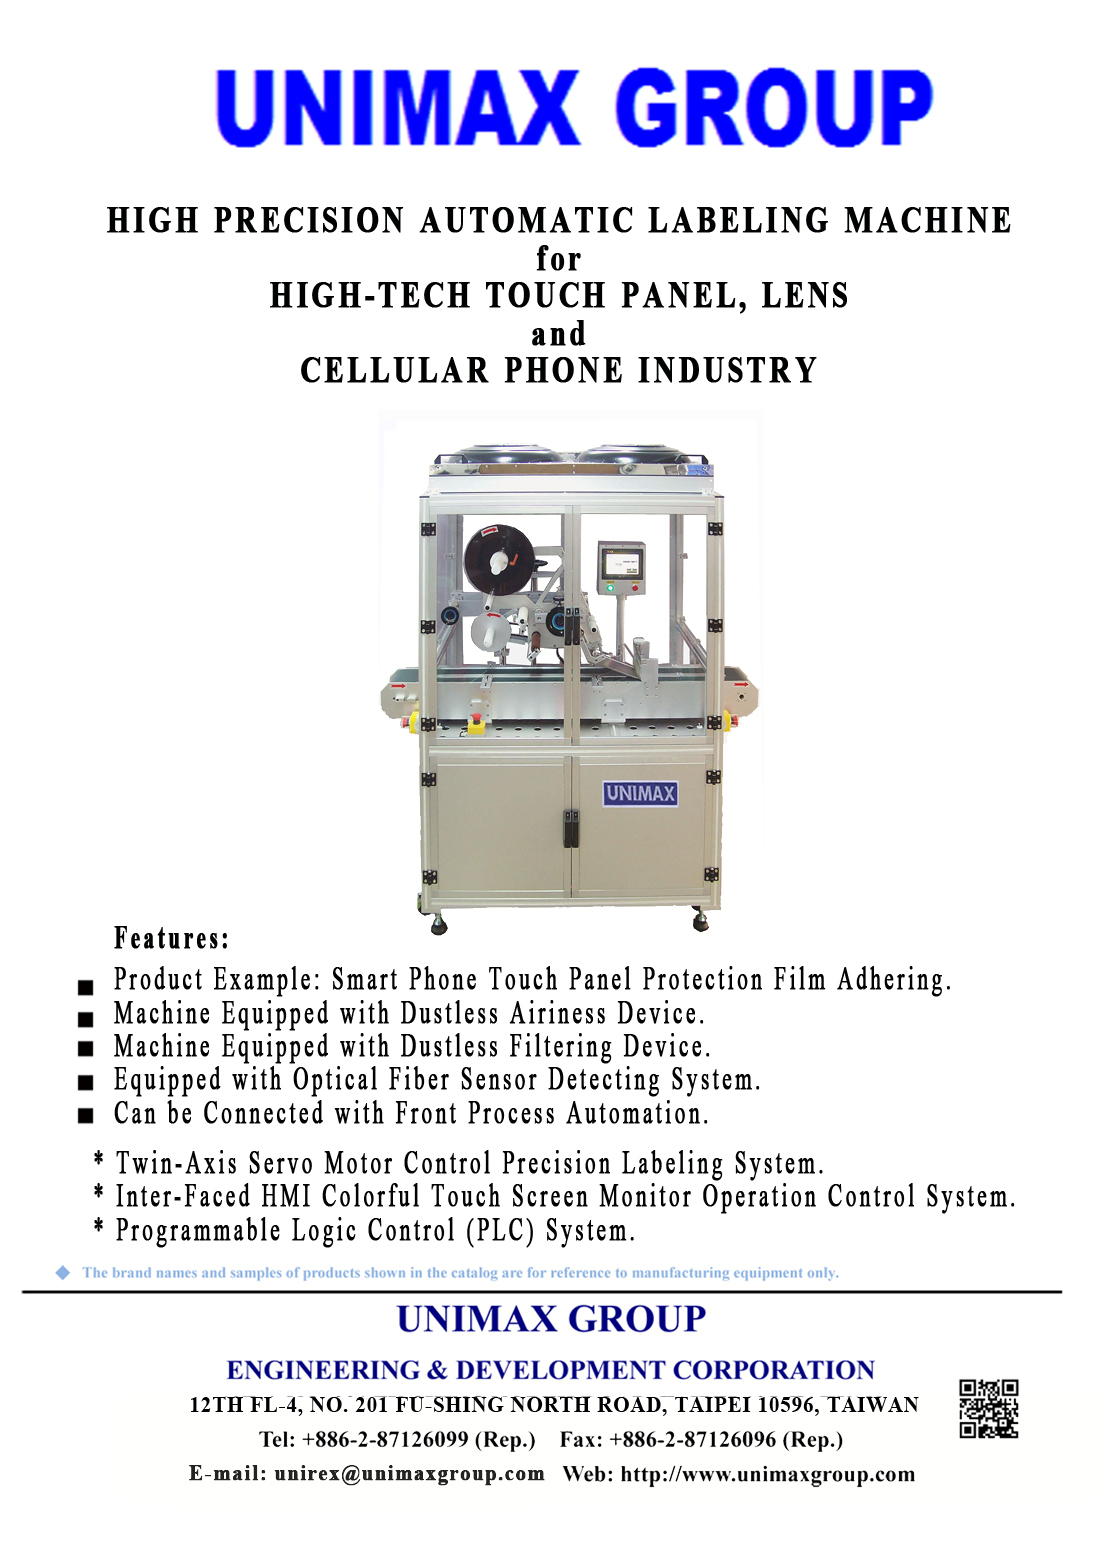 High-Tech Series 310B2 for High-Tech Touch Panel